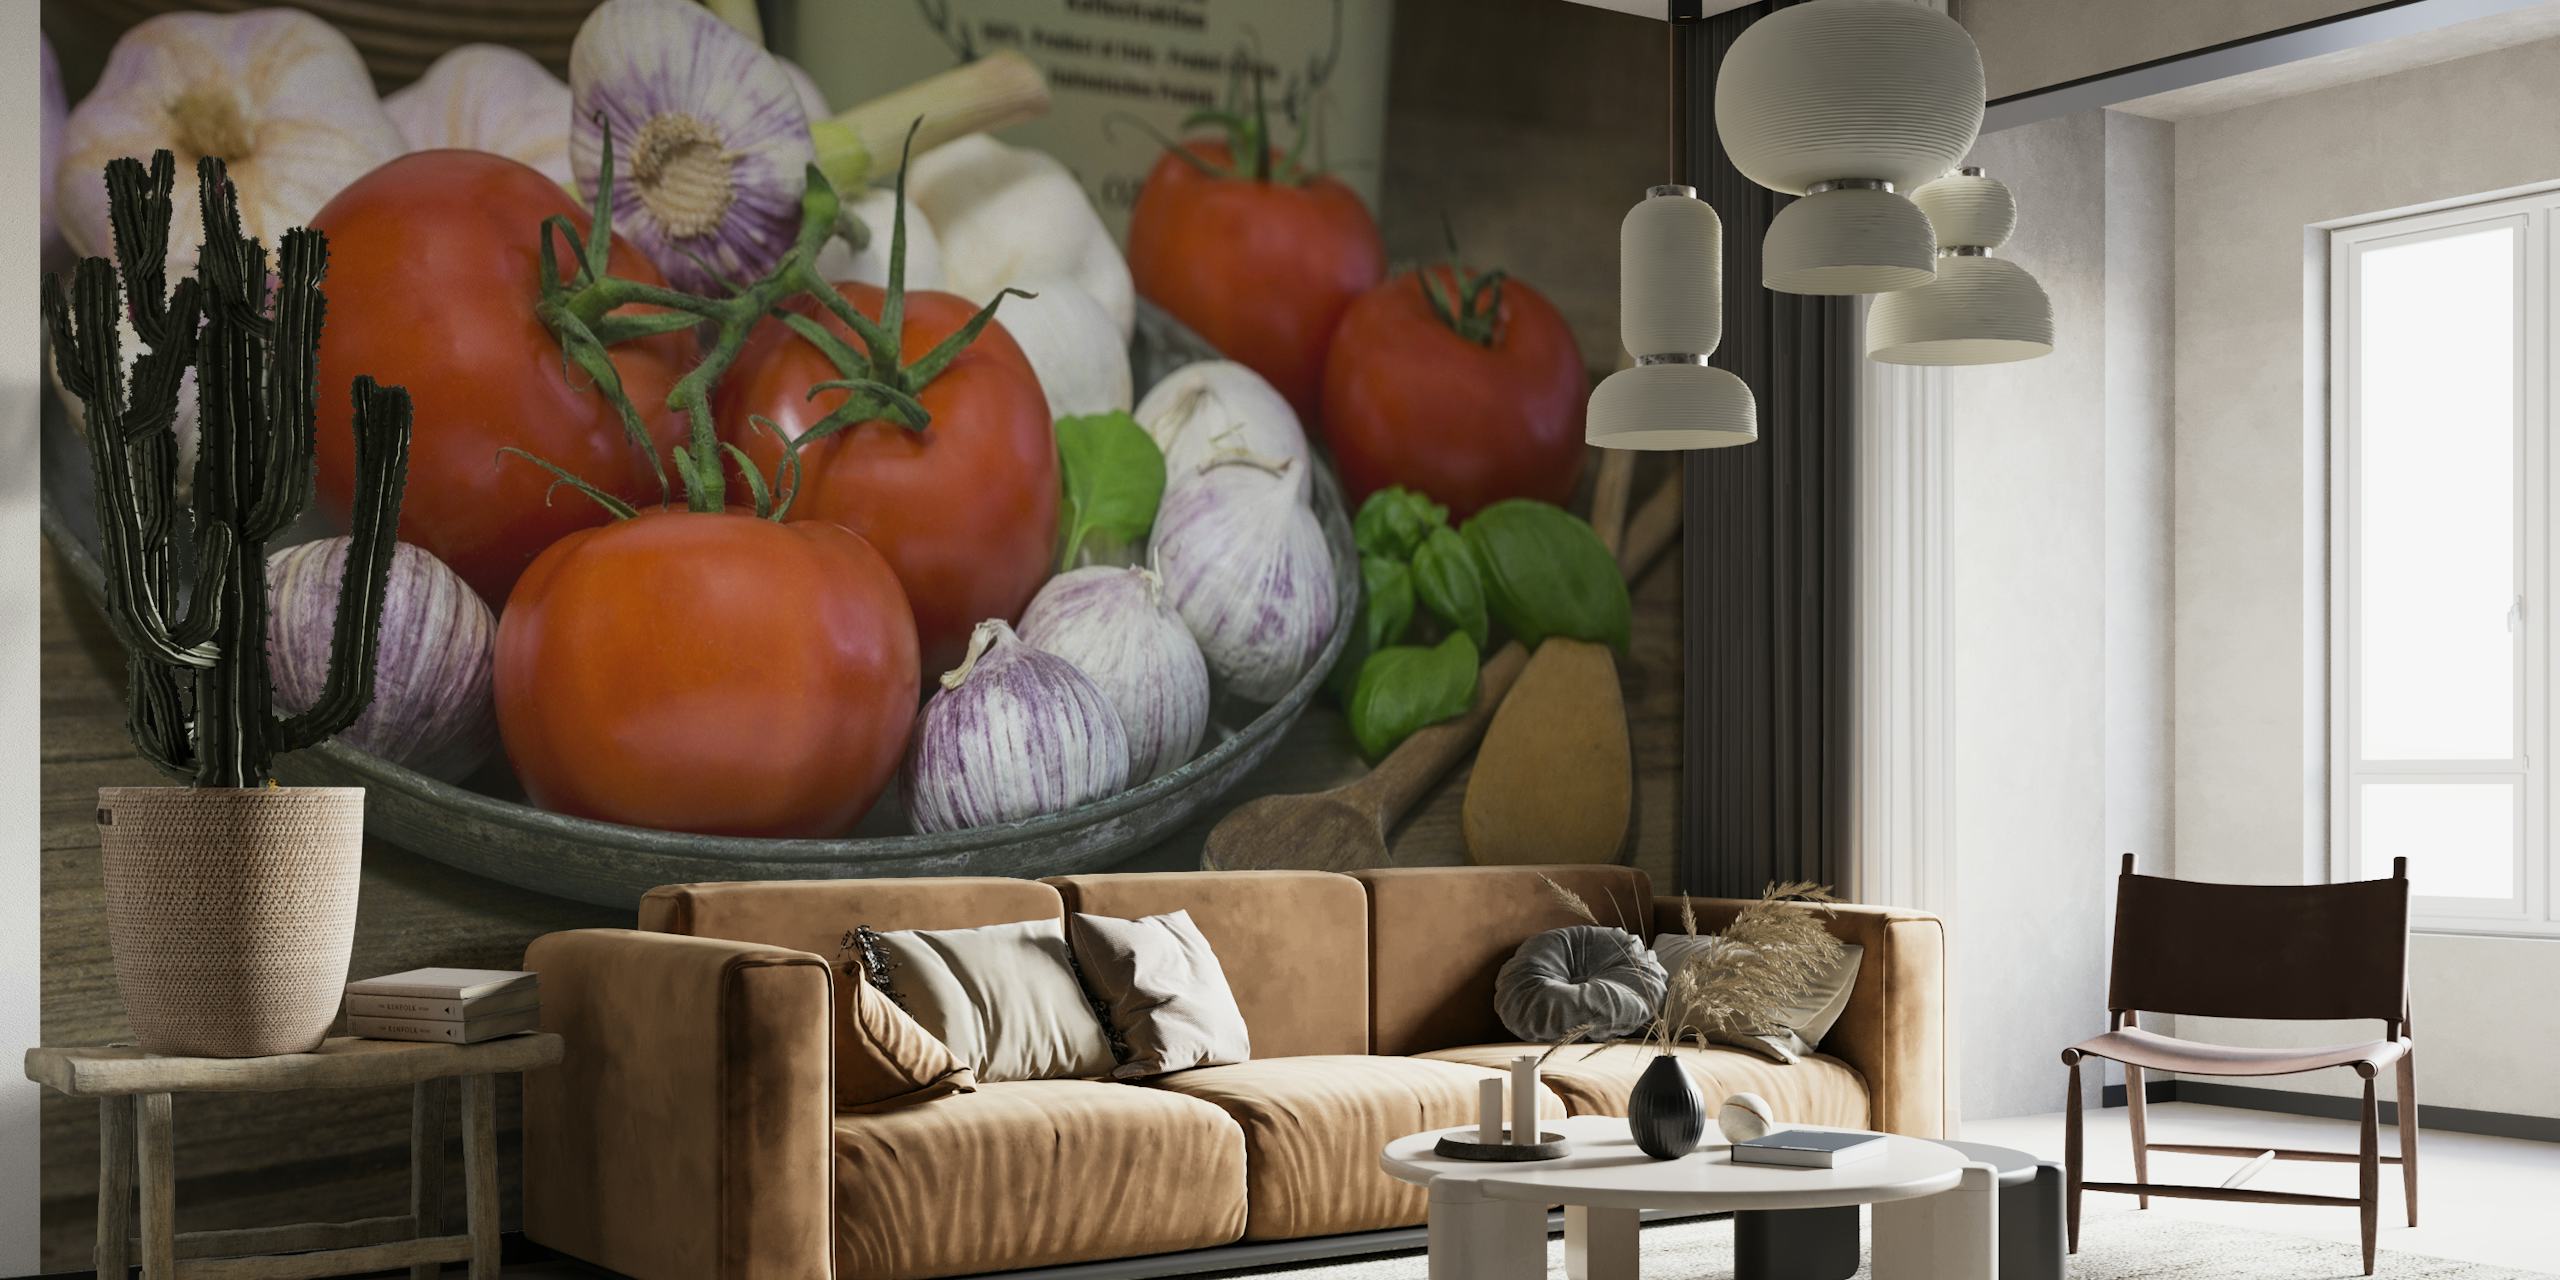 Fototapeta przedstawiająca podstawowe dania kuchni włoskiej z pomidorami, czosnkiem i bazylią na drewnianym stole